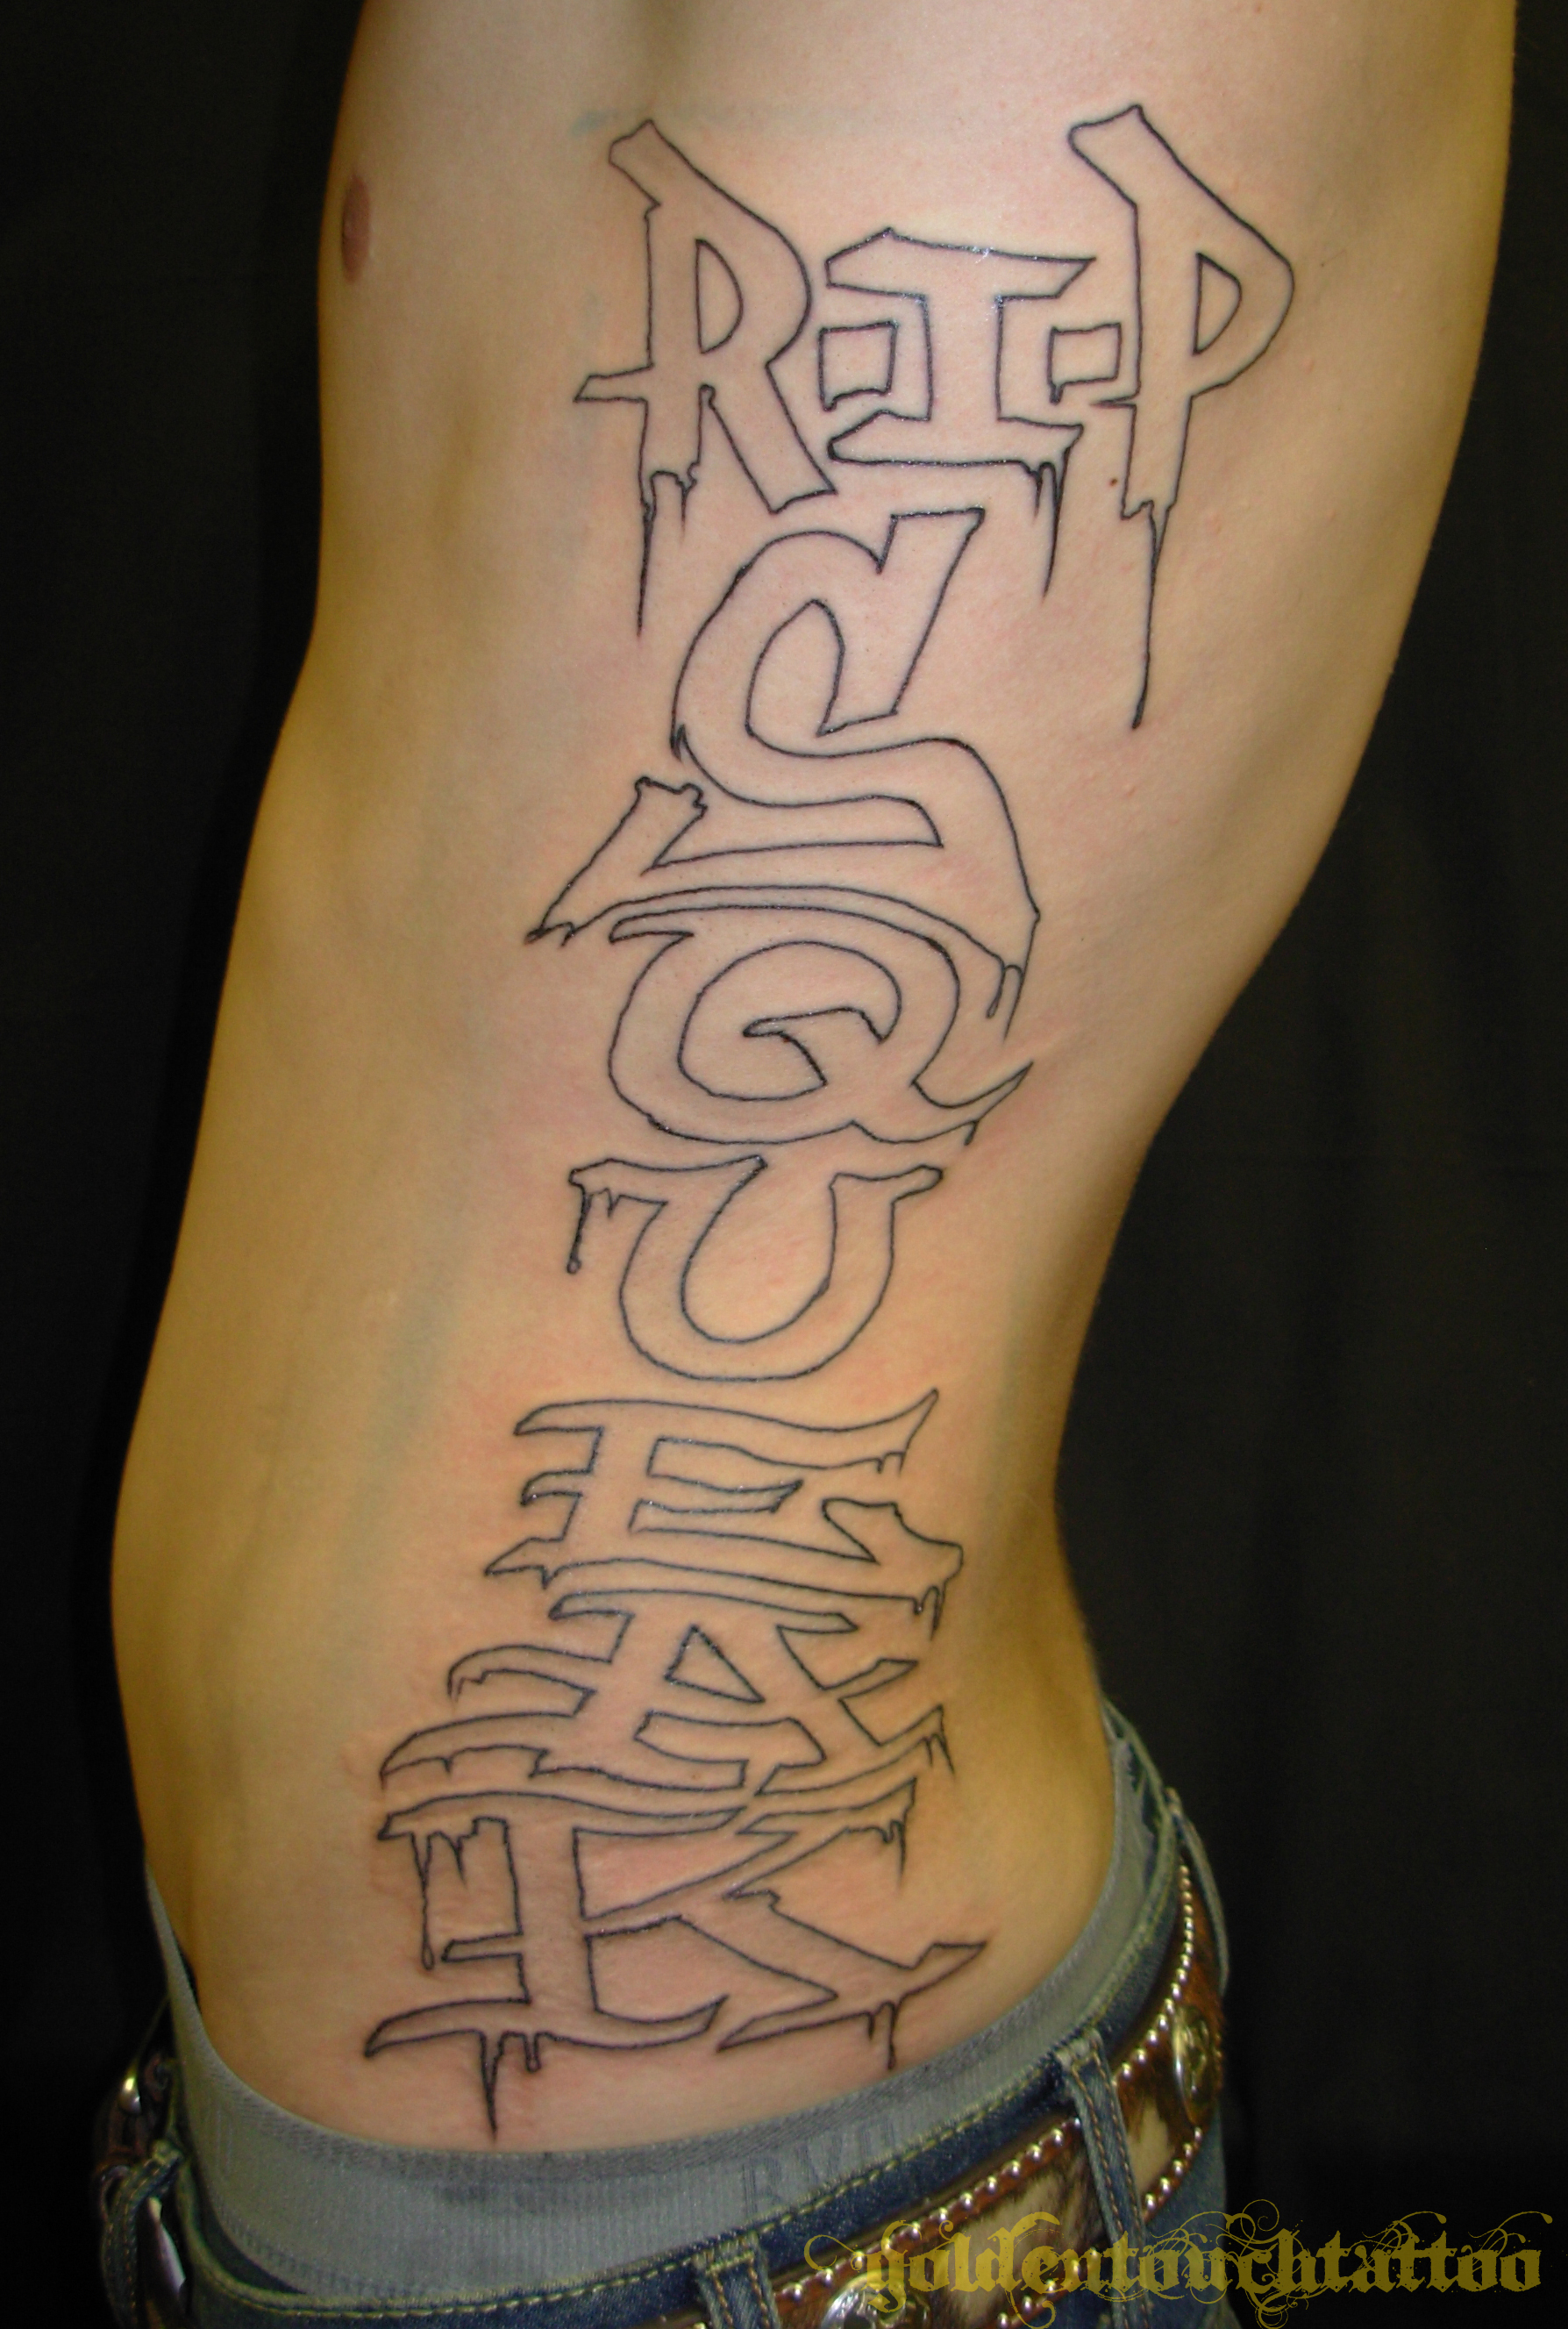 Tags graff tattoo tattoos